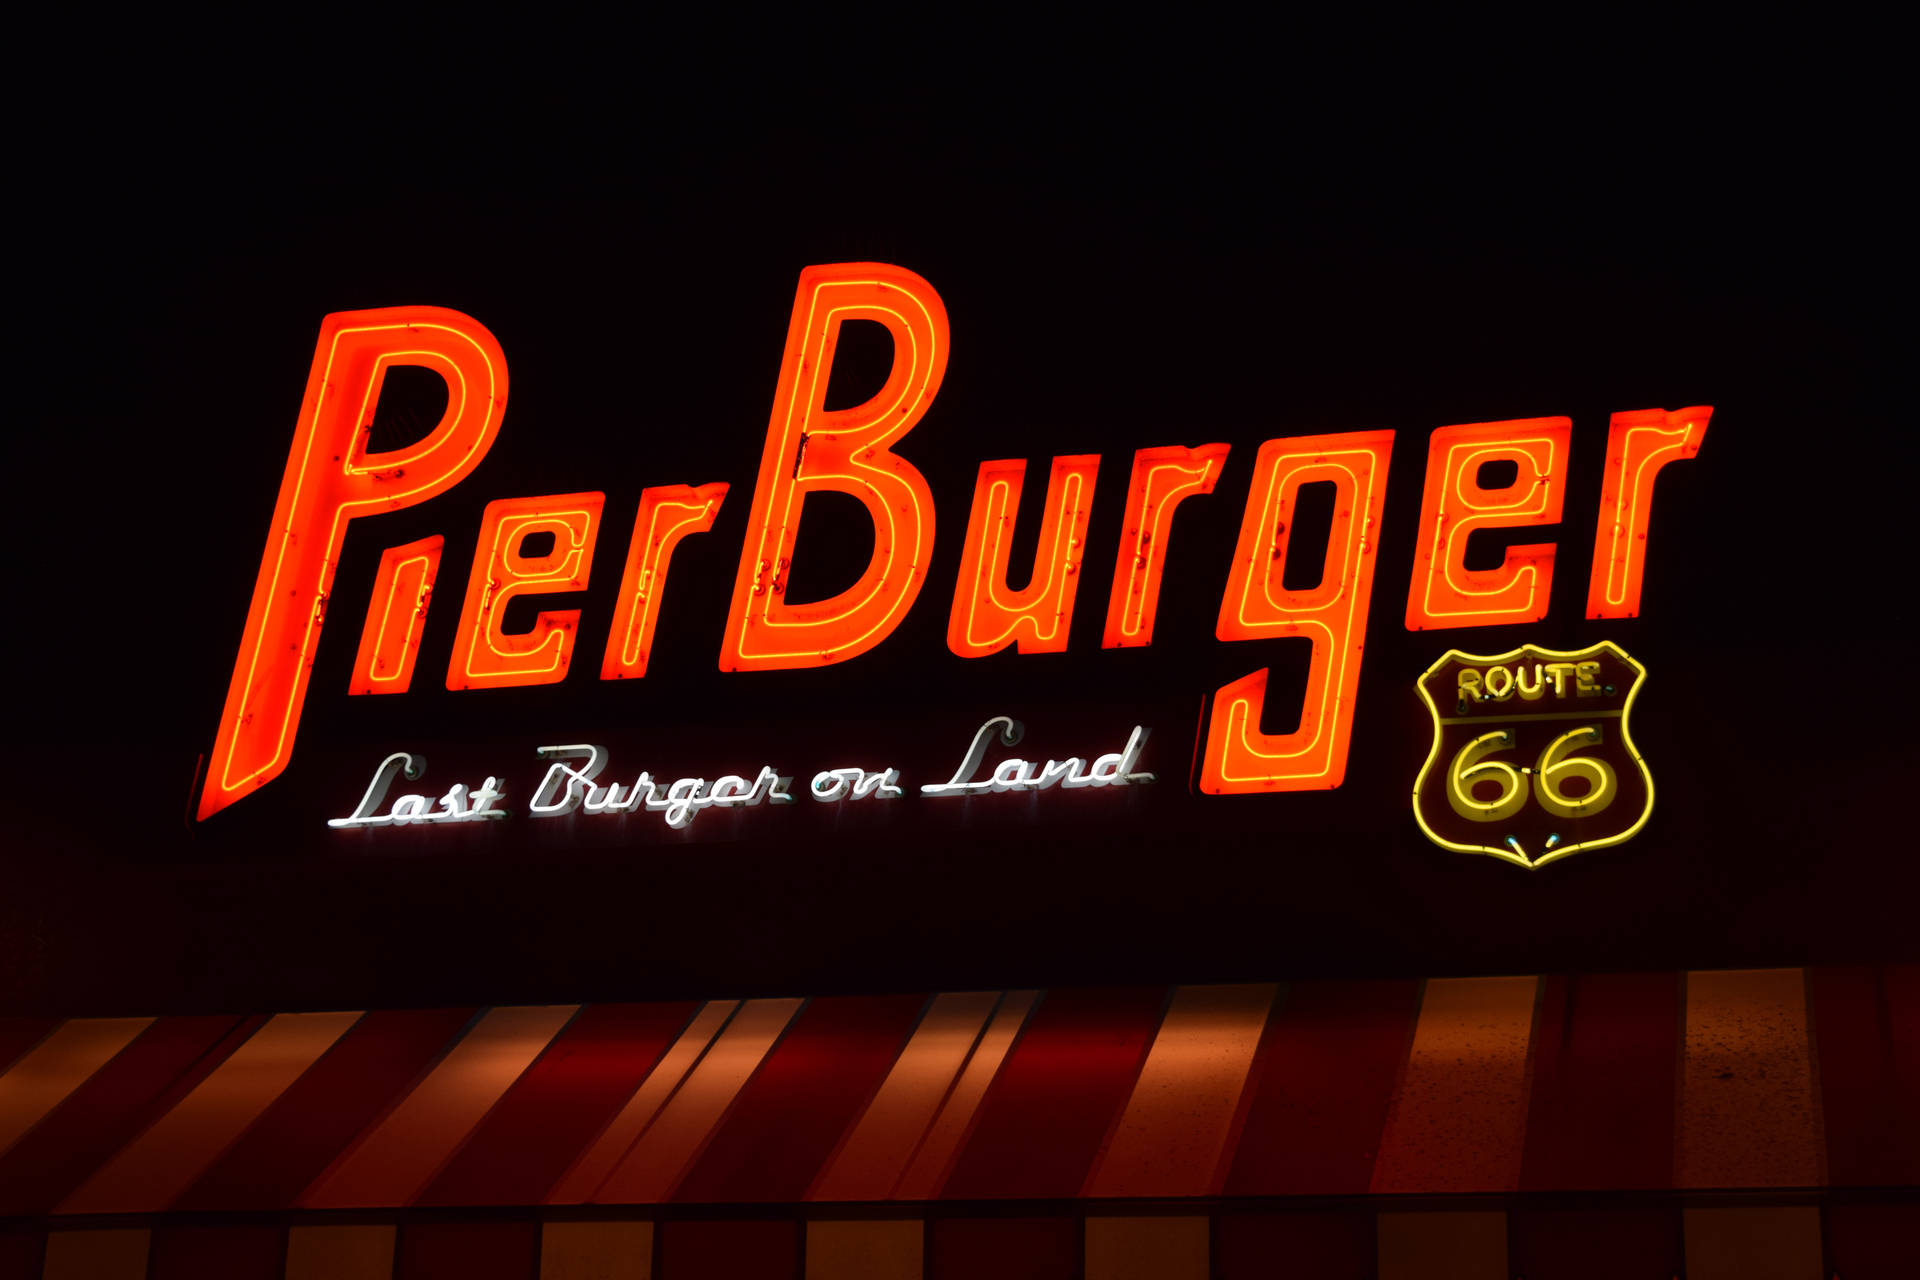 Santa Monica Pier Burger på sort baggrund. Wallpaper